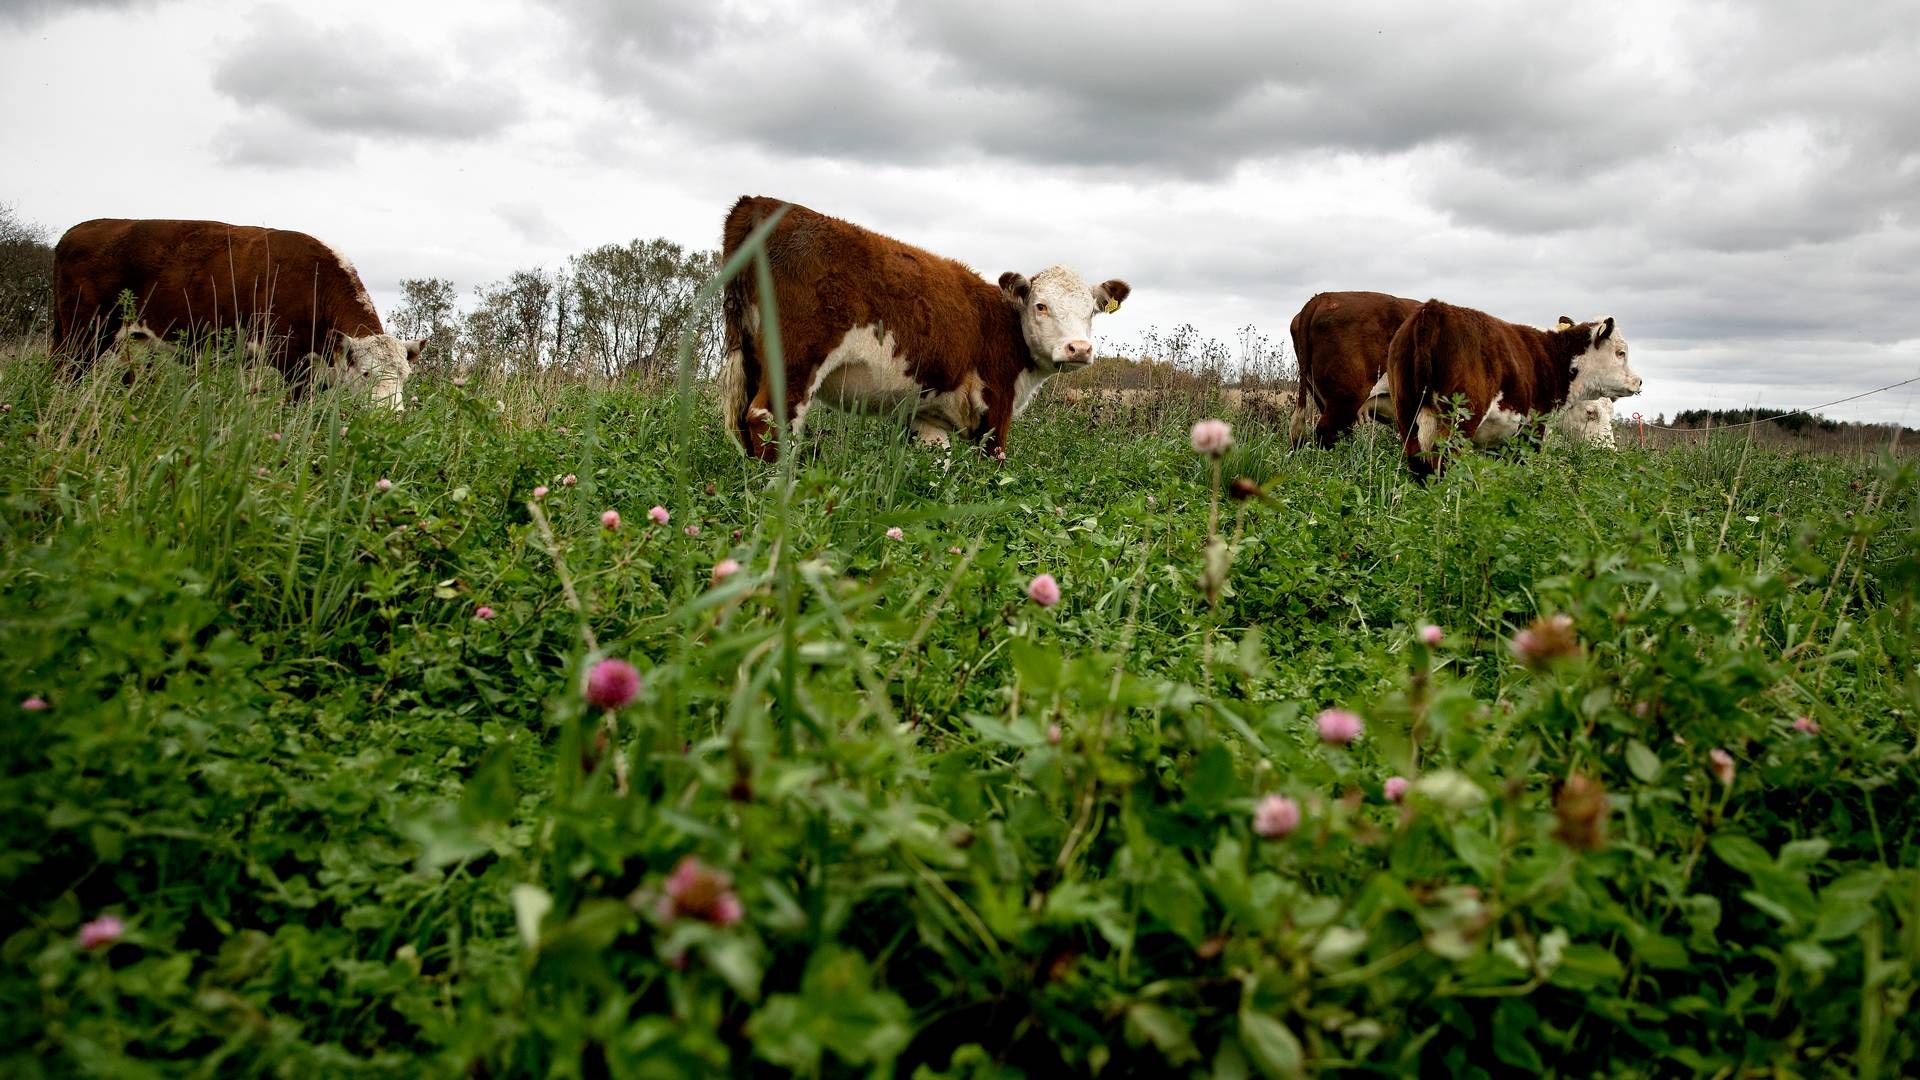 Landbruget og dets klimabelastning er centrum for masser af diskussion i denne tid. | Foto: Finn Frandsen/Ritzau Scanpix